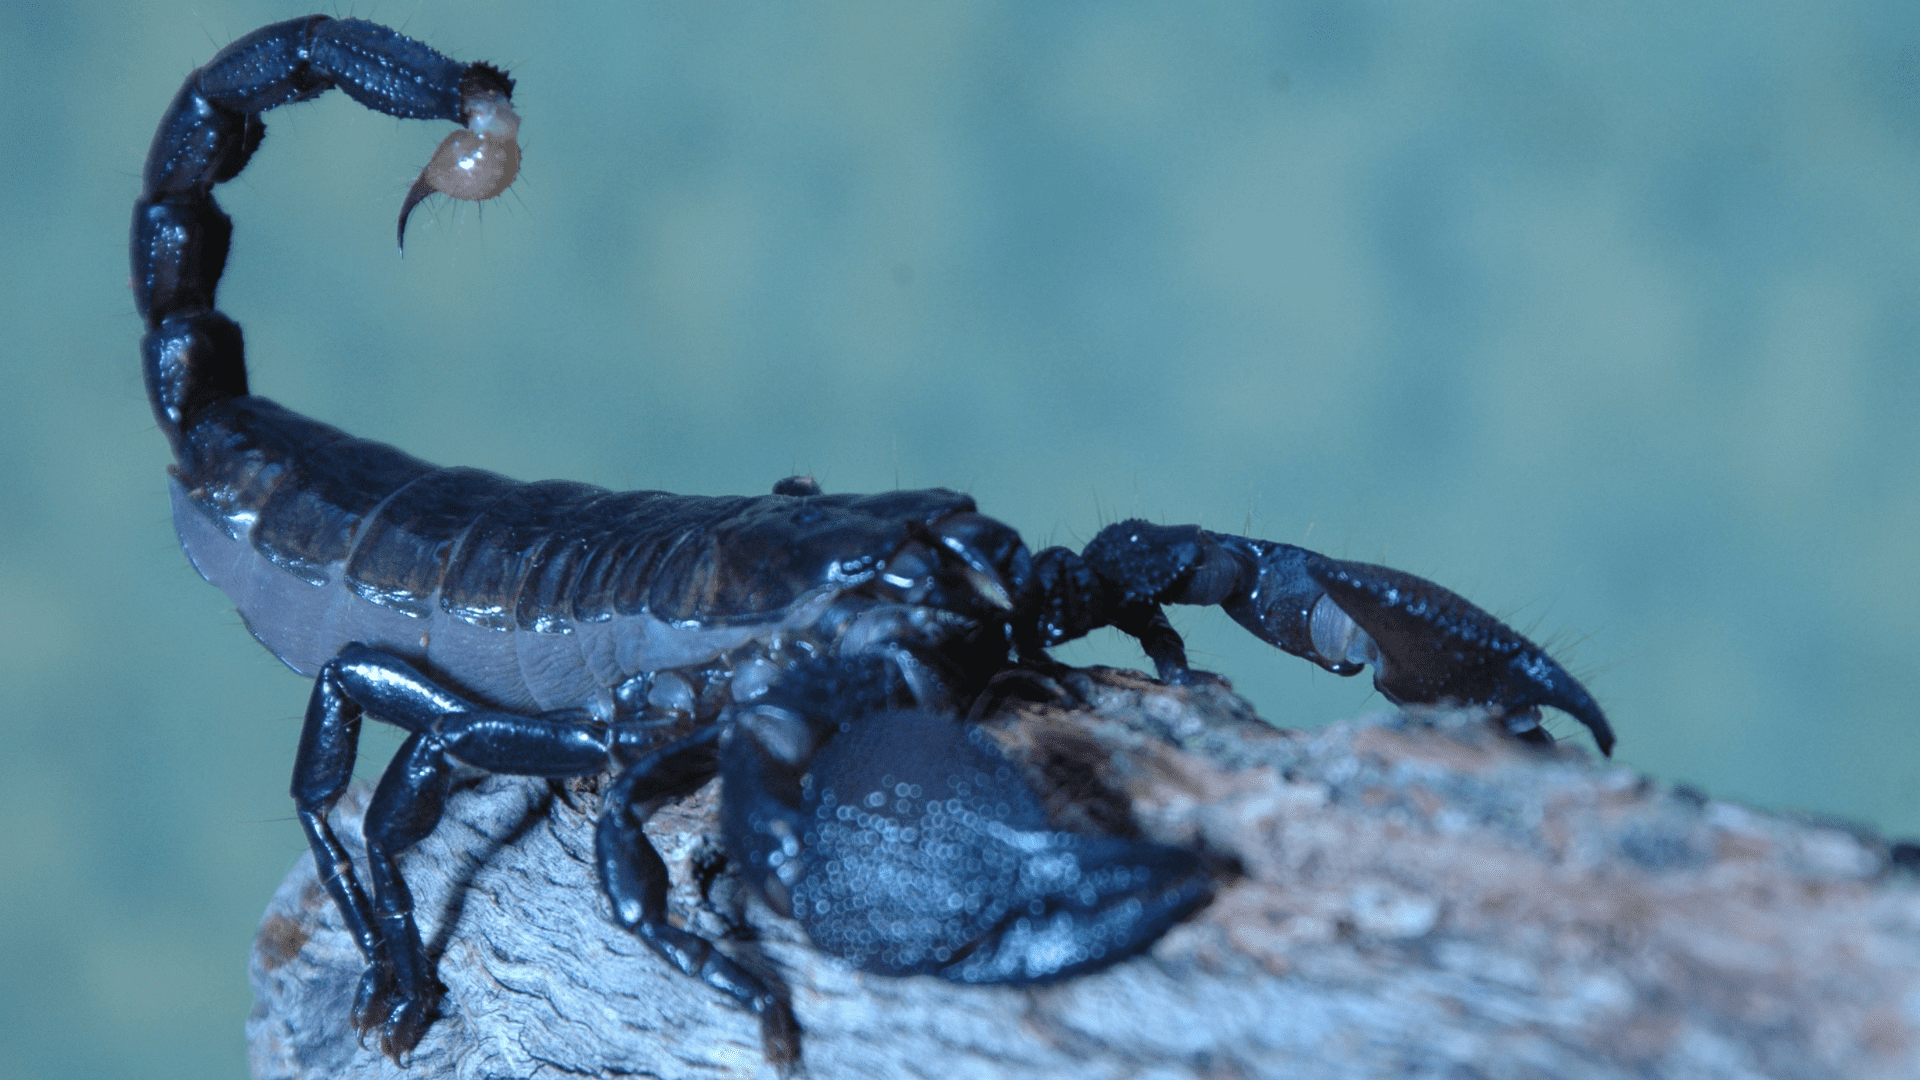 Black Scorpion Spiritual Meaning